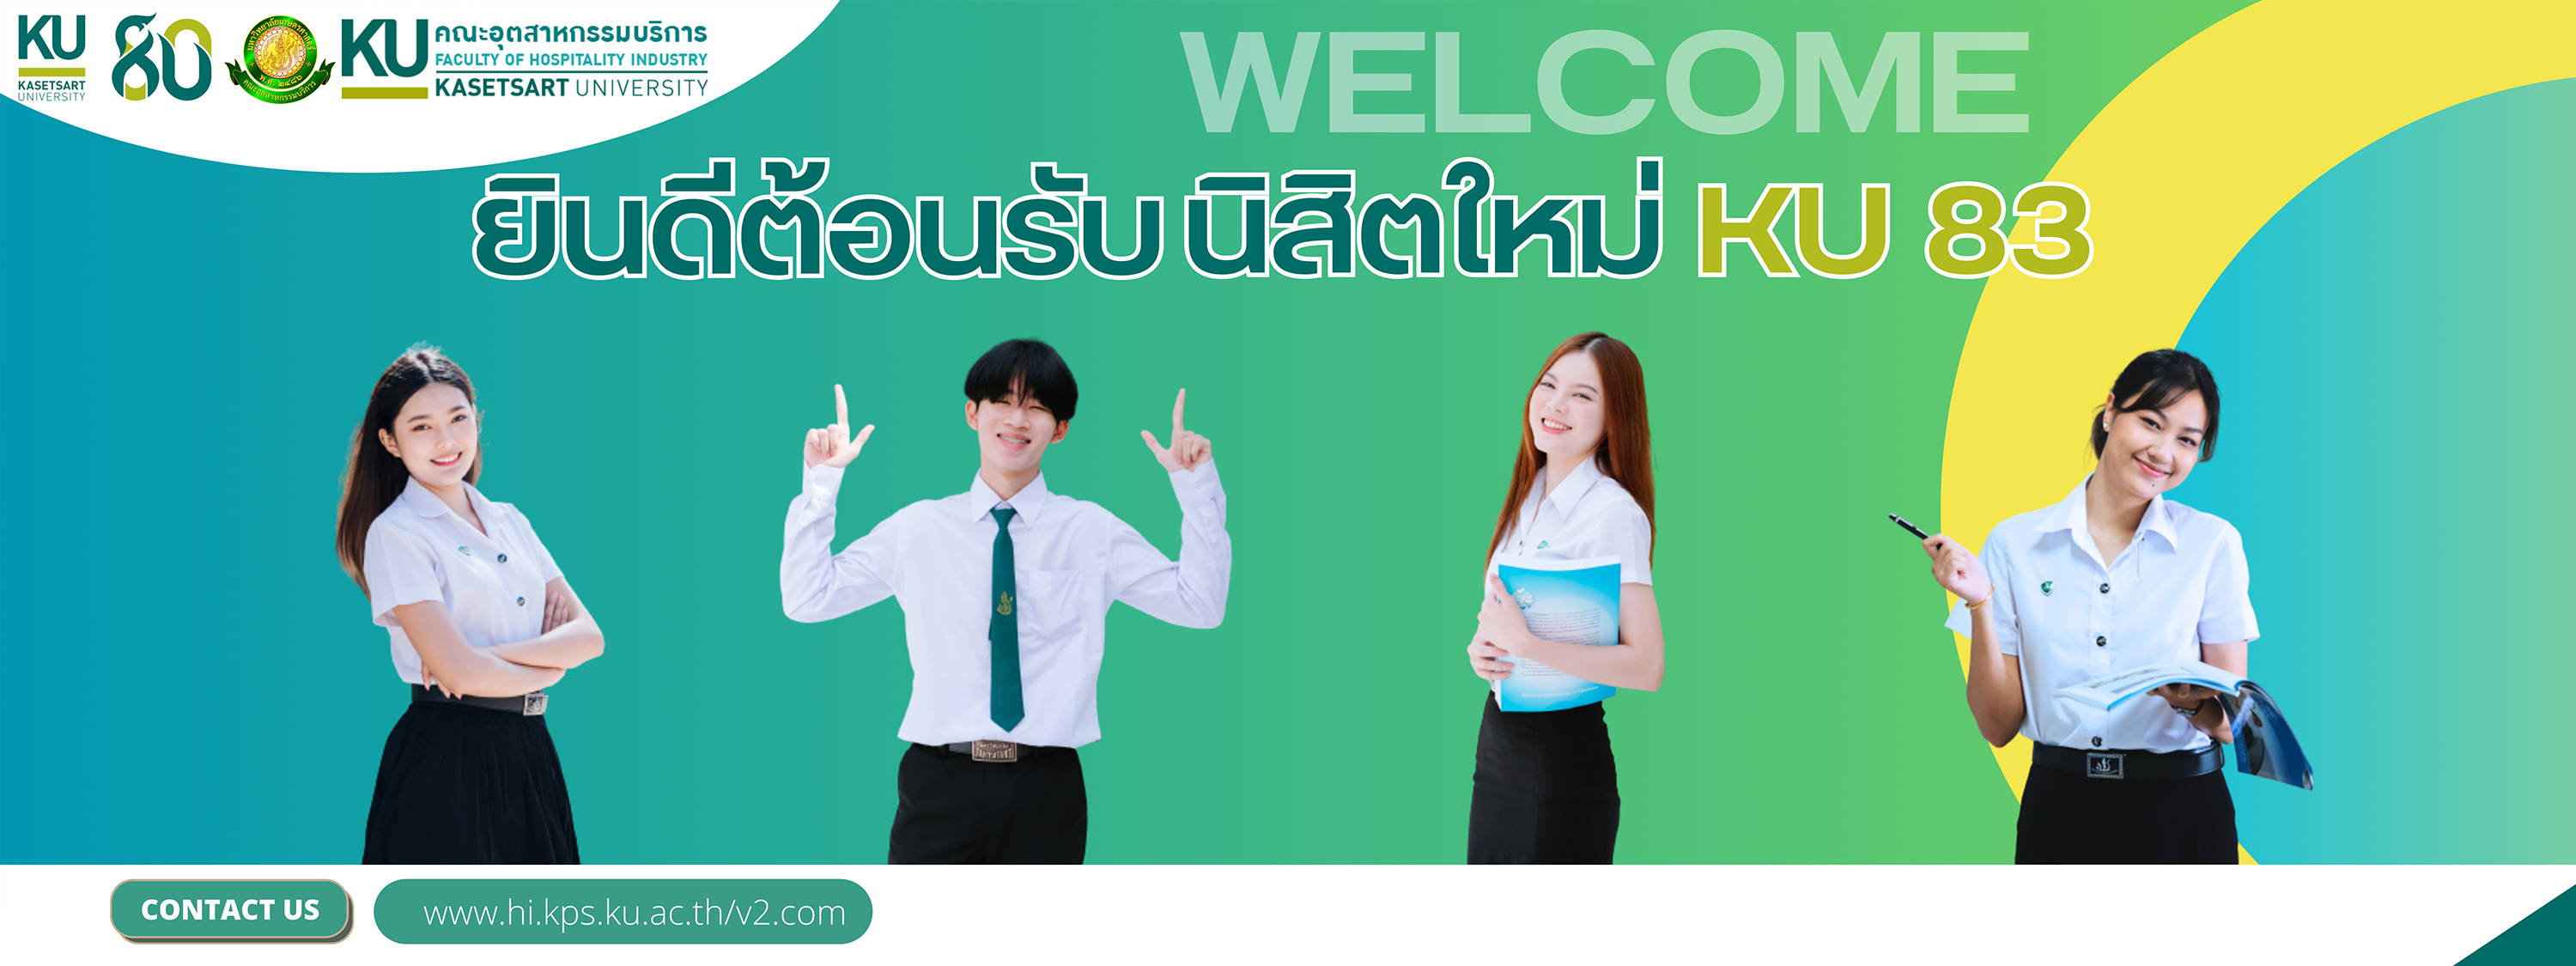 Welcome KU83